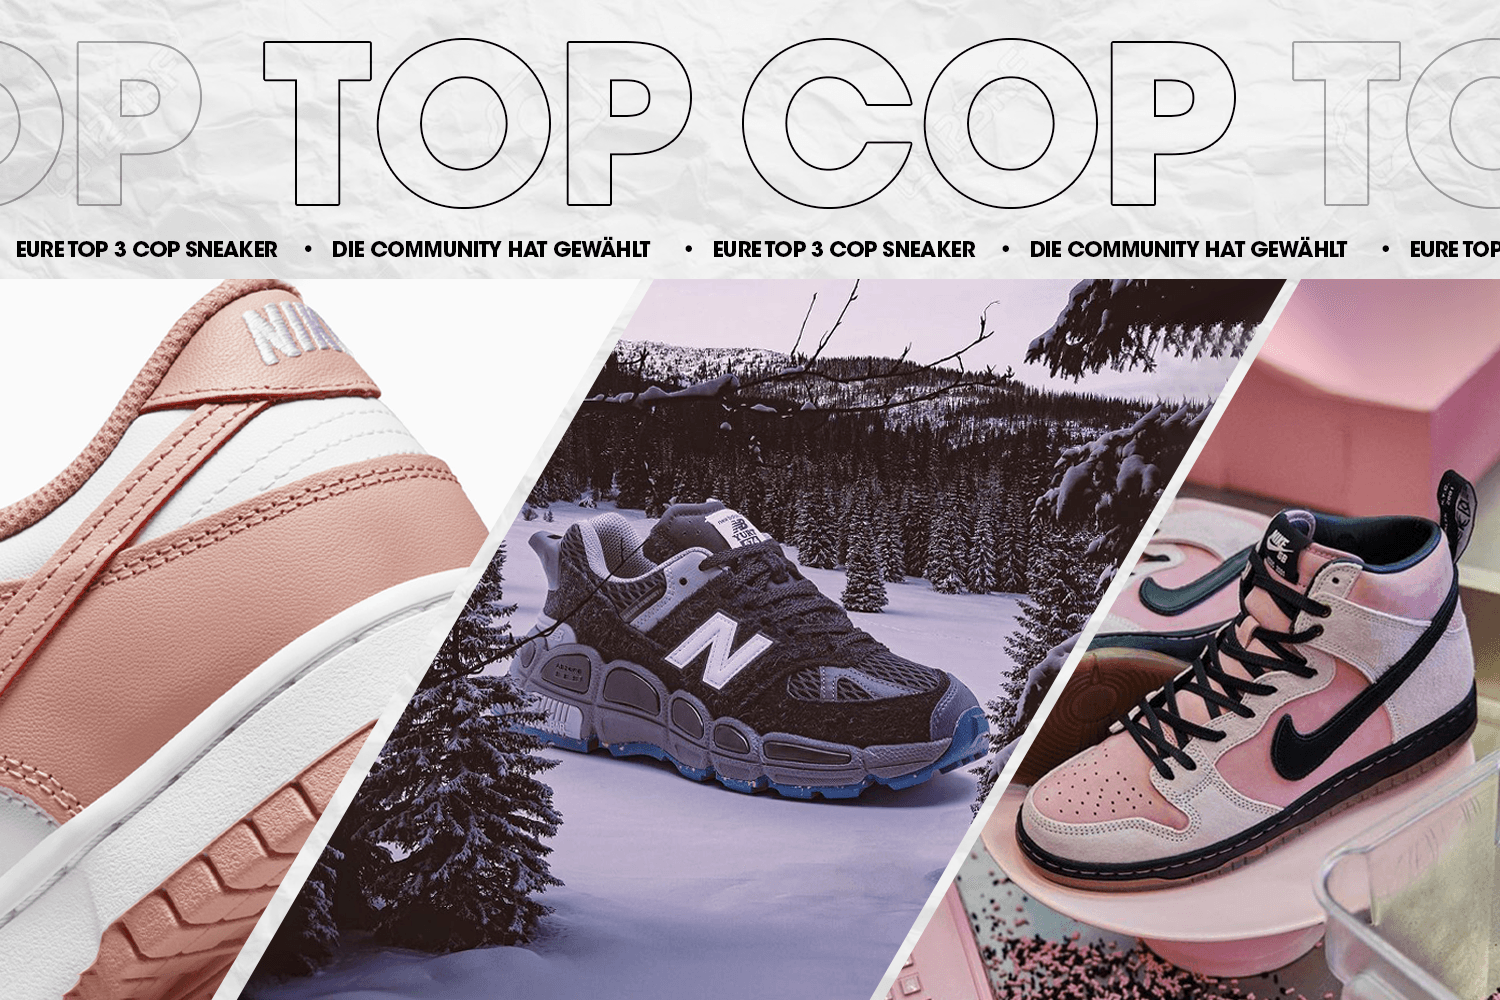 Die Community hat gewählt: Eure Top 3 Cop Sneaker Woche 17